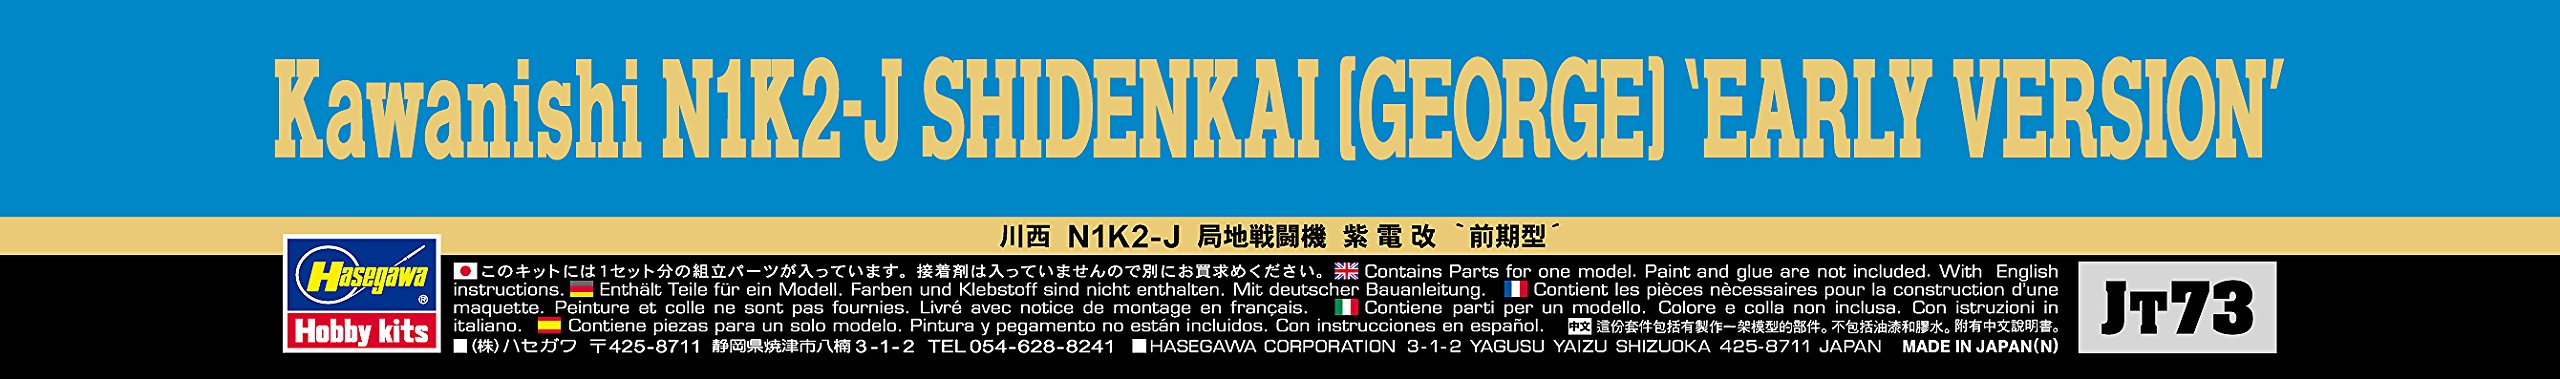 HASEGAWA 1/48 Kawanishi N1K2 Shidenkai George 'première version' modèle en plastique